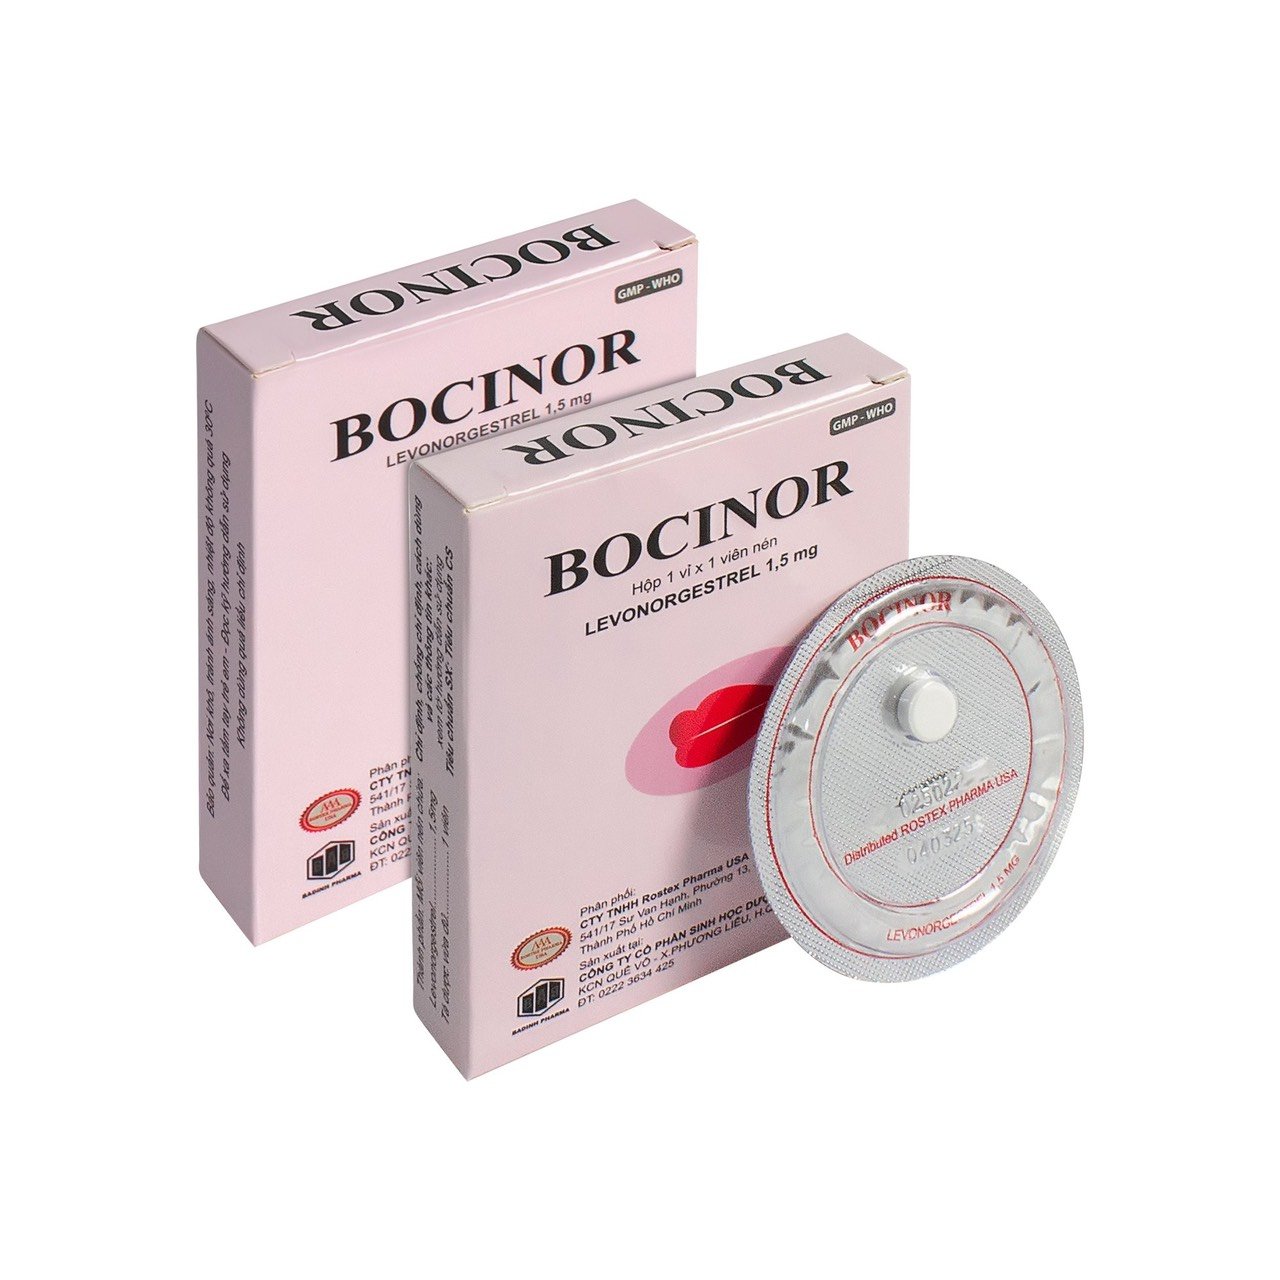 Tác dụng phụ của thuốc tránh thai khẩn cấp Bocinor: Hiểu rõ để sử dụng an toàn